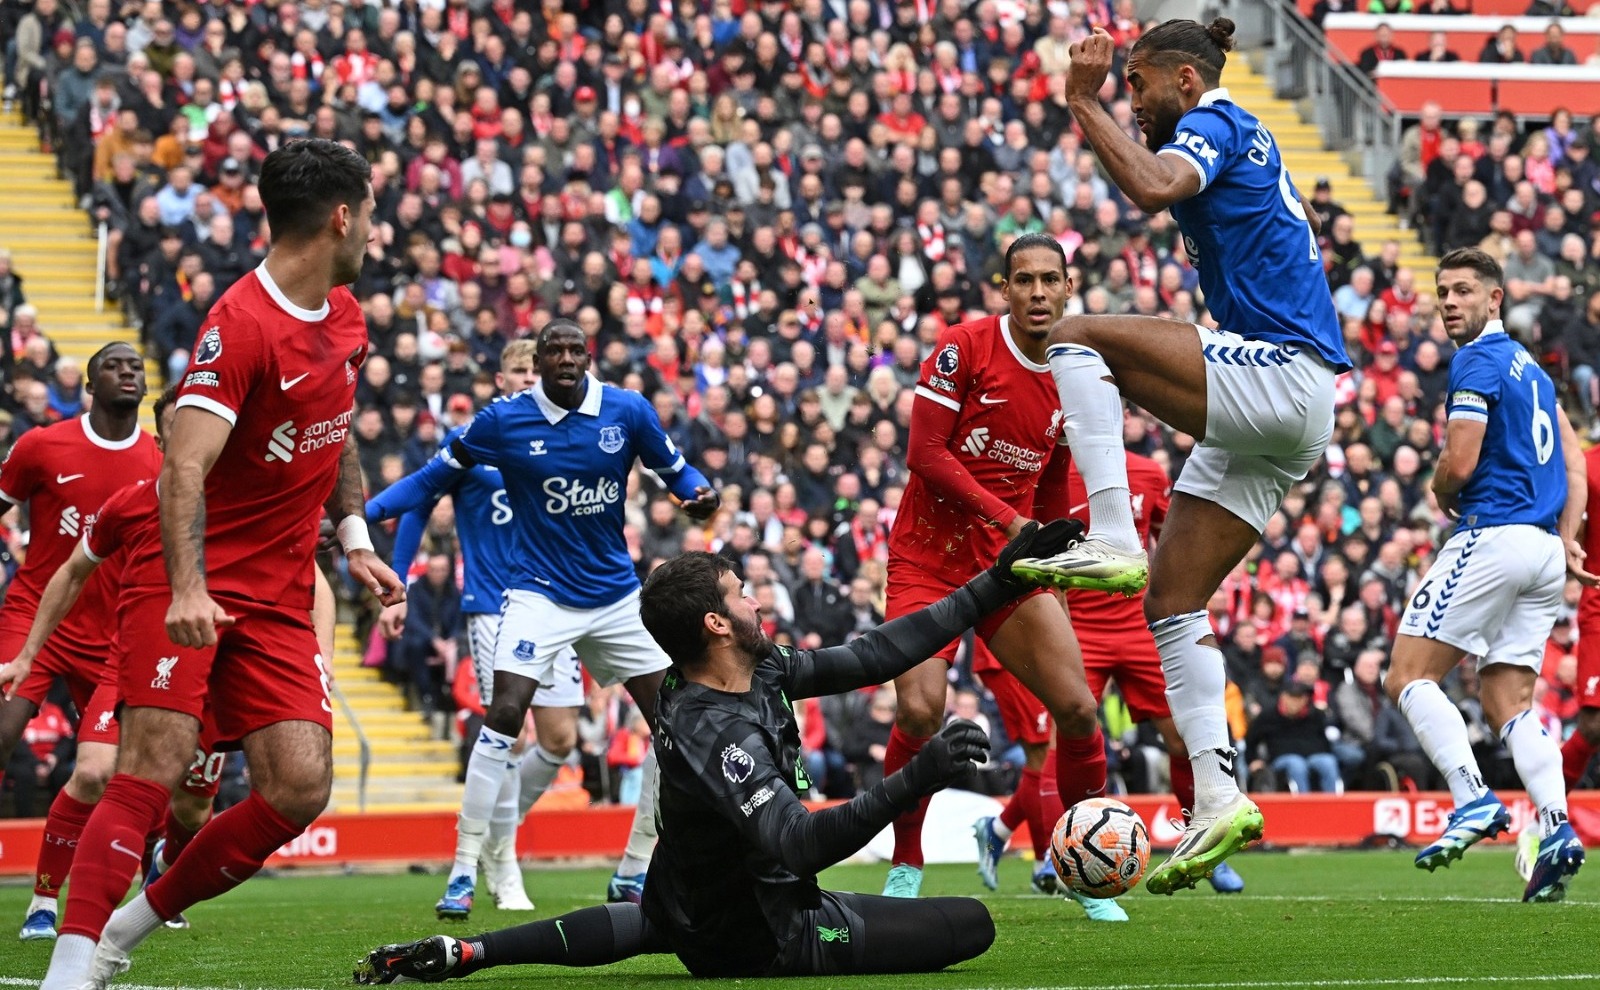 Liverpool - Everton 0-0, ACUM, pe Digi Sport 1. Al 294-lea ”Merseyside derby”. ”Caramelele” rămân în 10